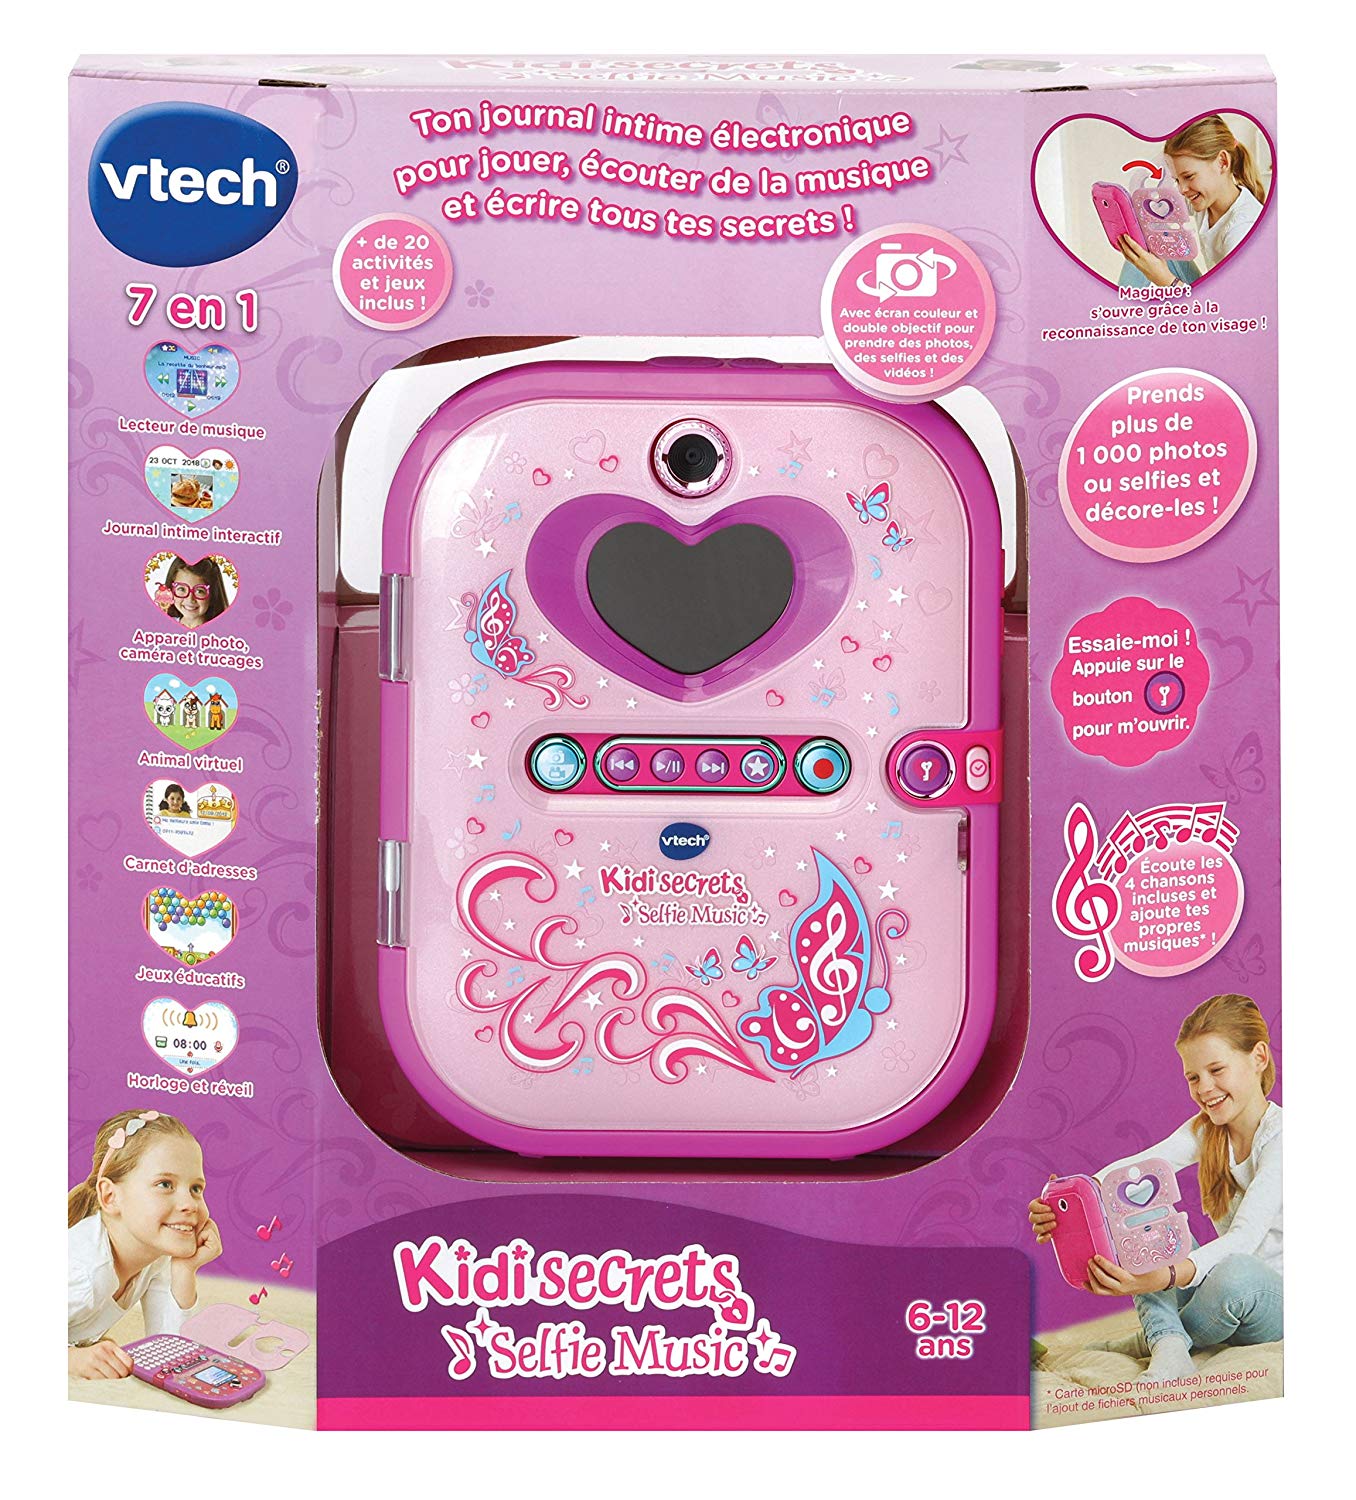 VTECH - Kidi secrets selfie music 2.0 diario segreto elettronico con  riconoscimento facciale! - Toys Center